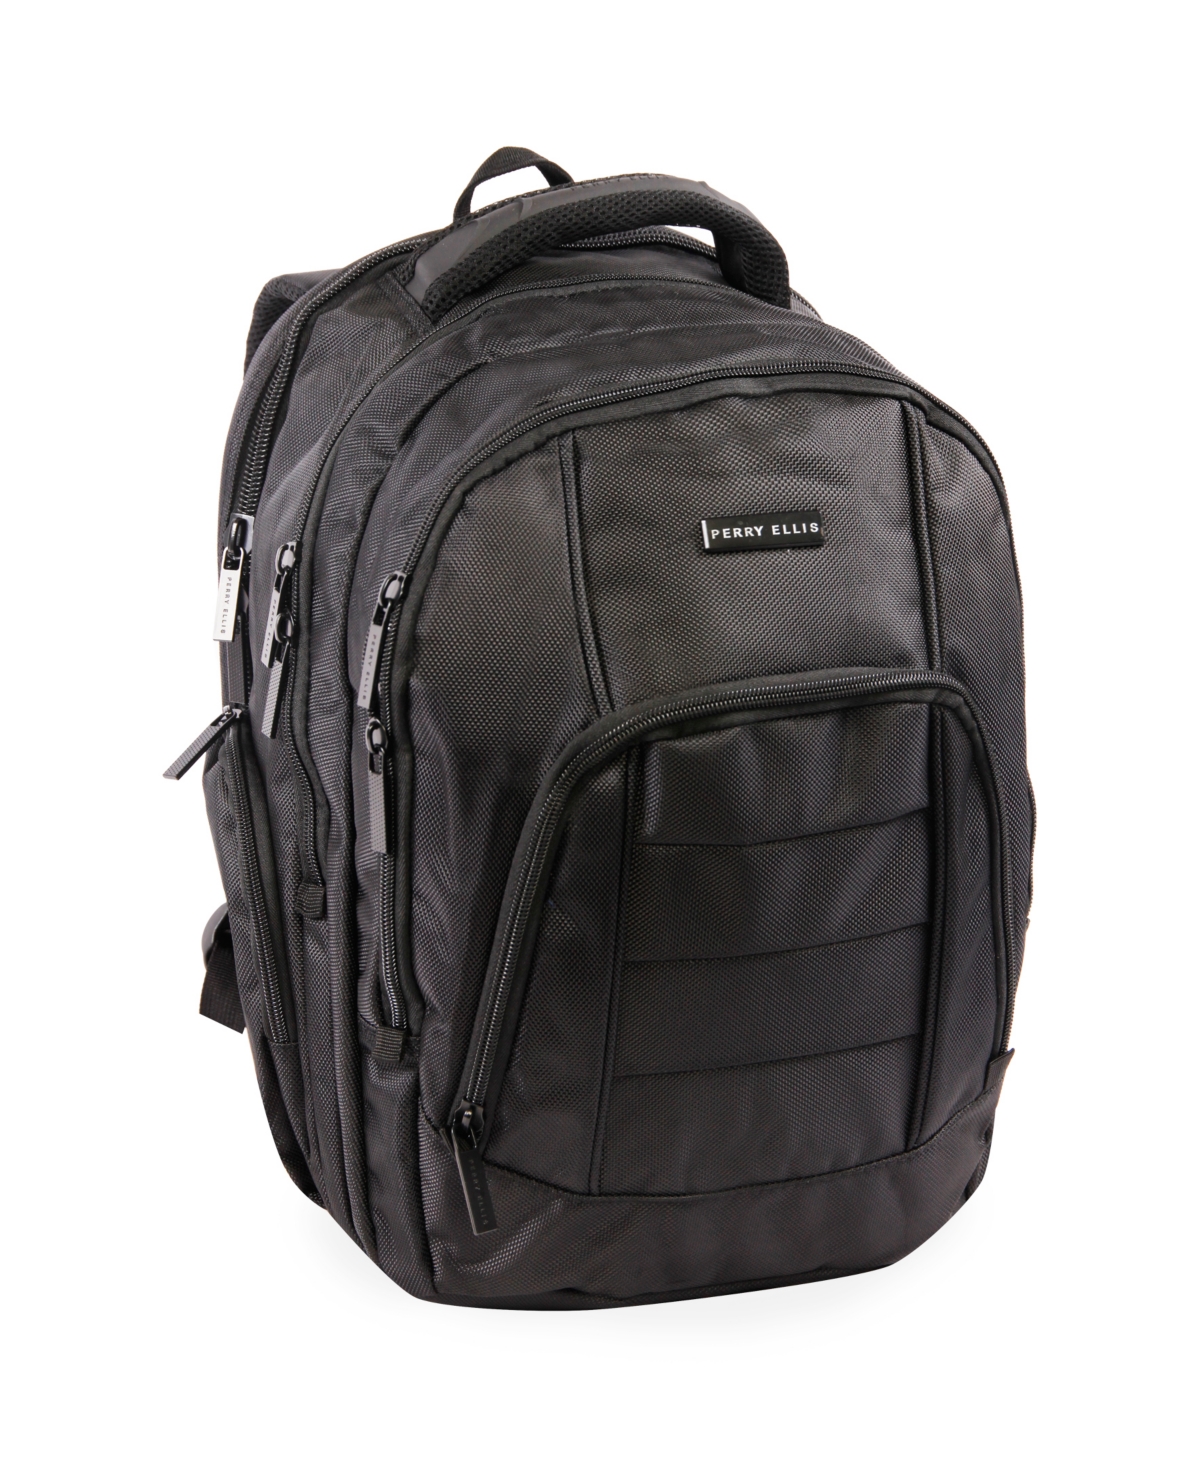 200 Laptop Backpack - Black